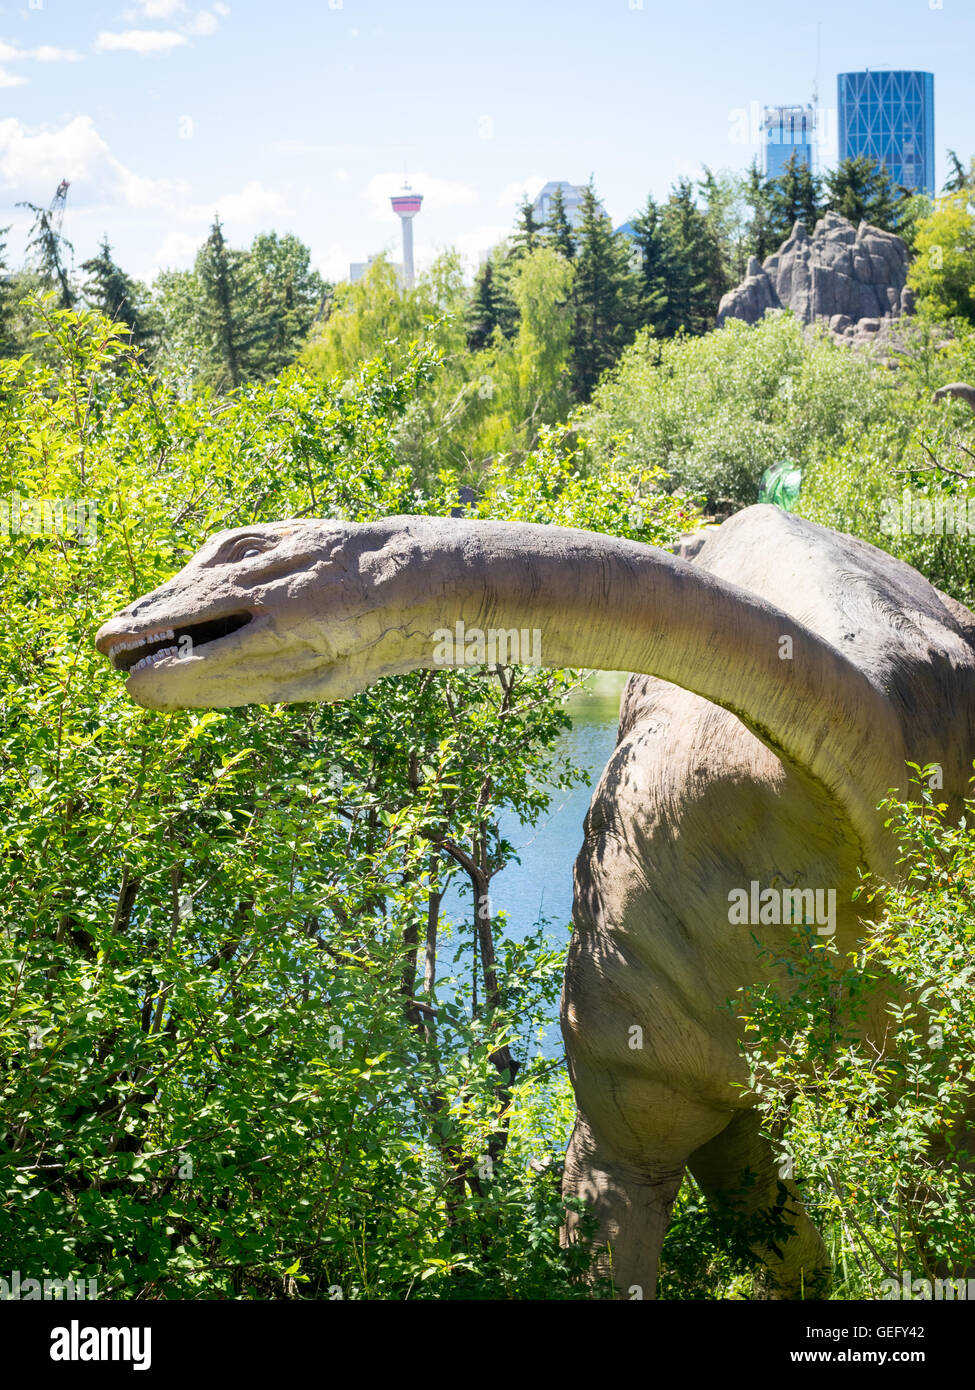 Ein Modell-Nachbau des ein Apatosaurus, eine Gattung der Sauropoden Dinosaurier. Zoo von Calgary, Calgary, Alberta, Kanada. Stockfoto